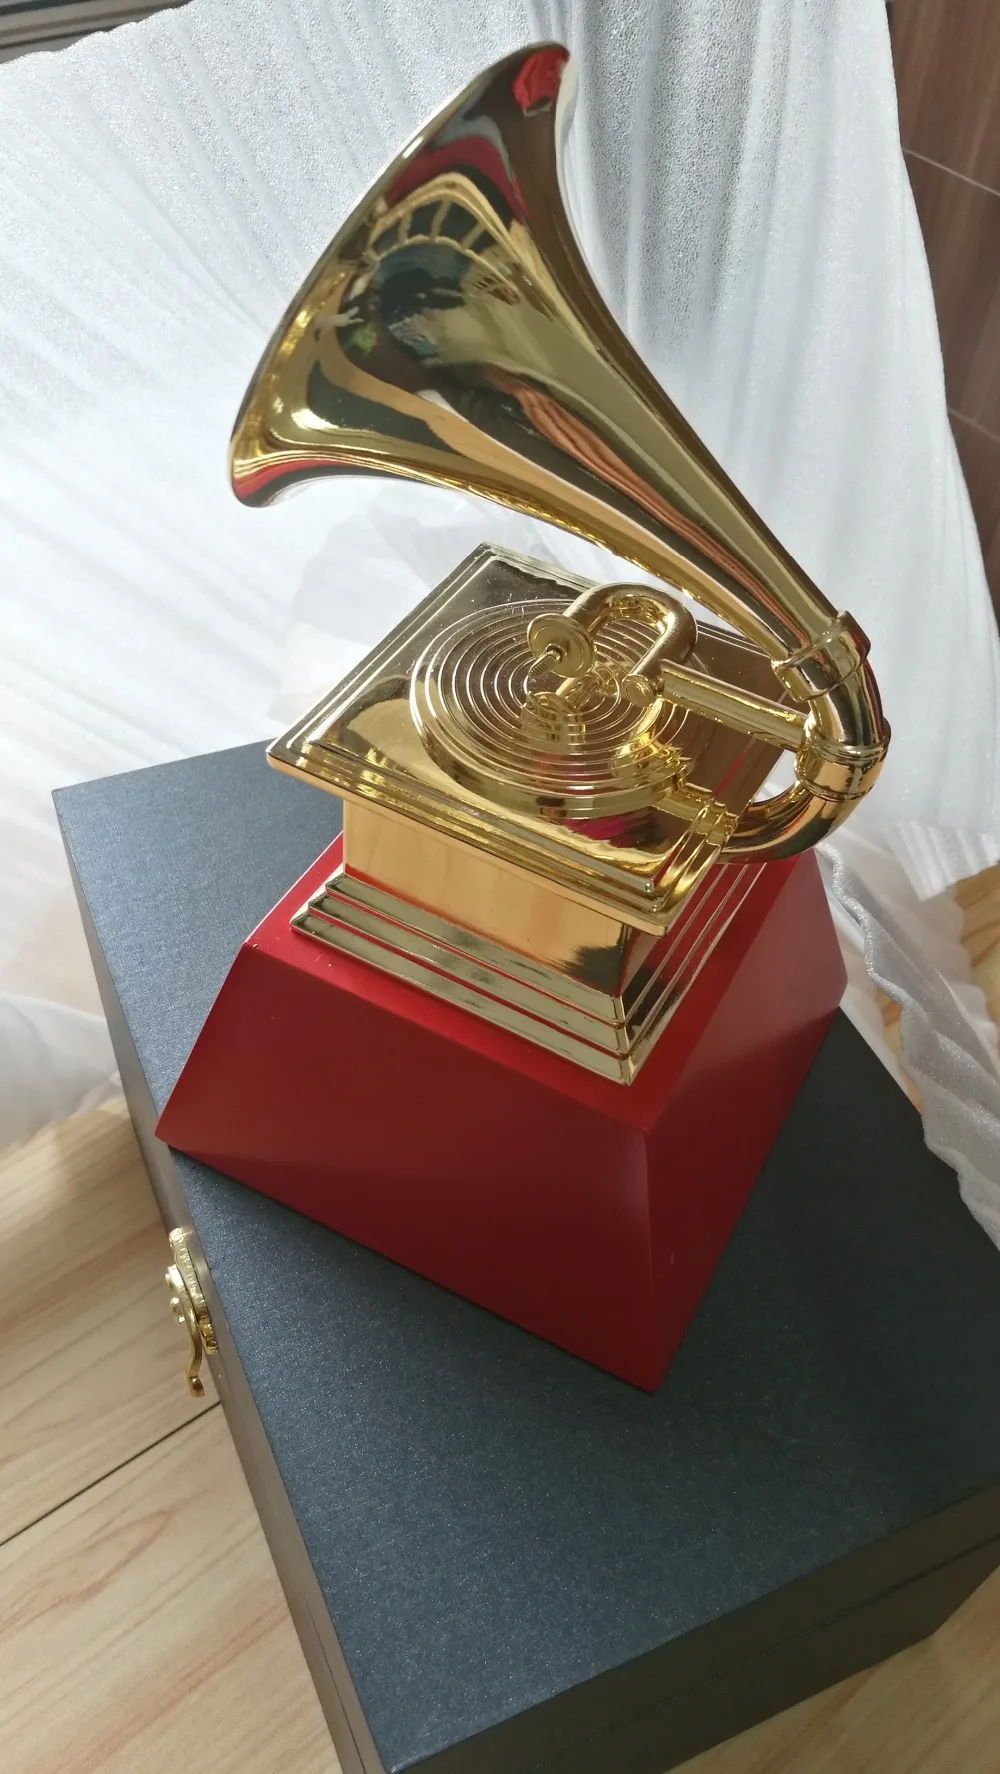 2018 GRAMMY Awards 1:1 реальной жизни Размеры 23 см высота Грэмми наград граммофон металла трофей сувенирная Коллекция Бесплатная доставка